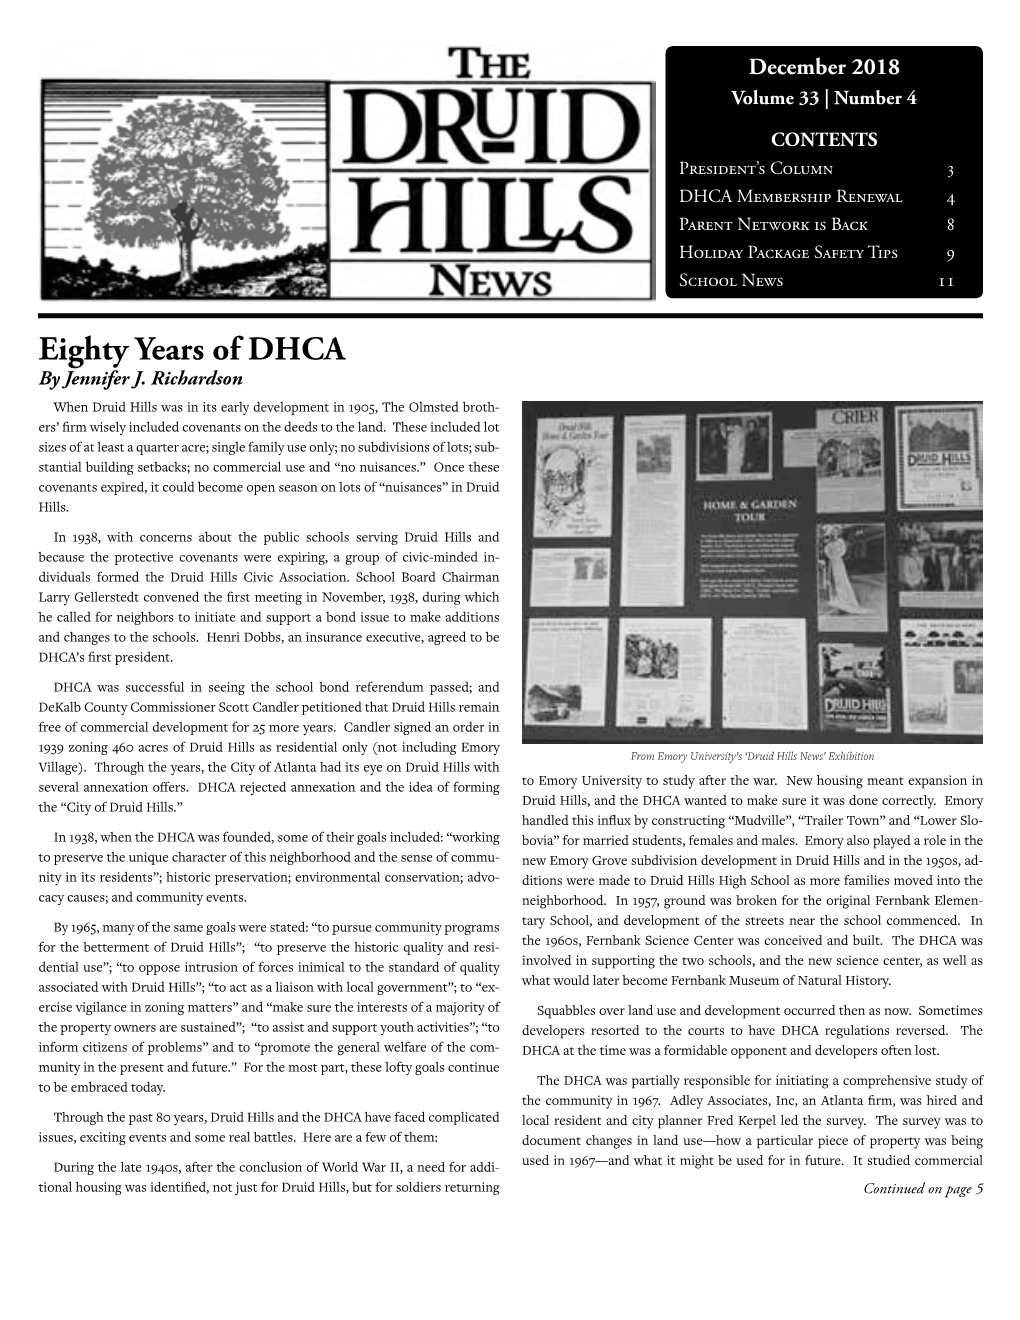 Eighty Years of DHCA by Jennifer J